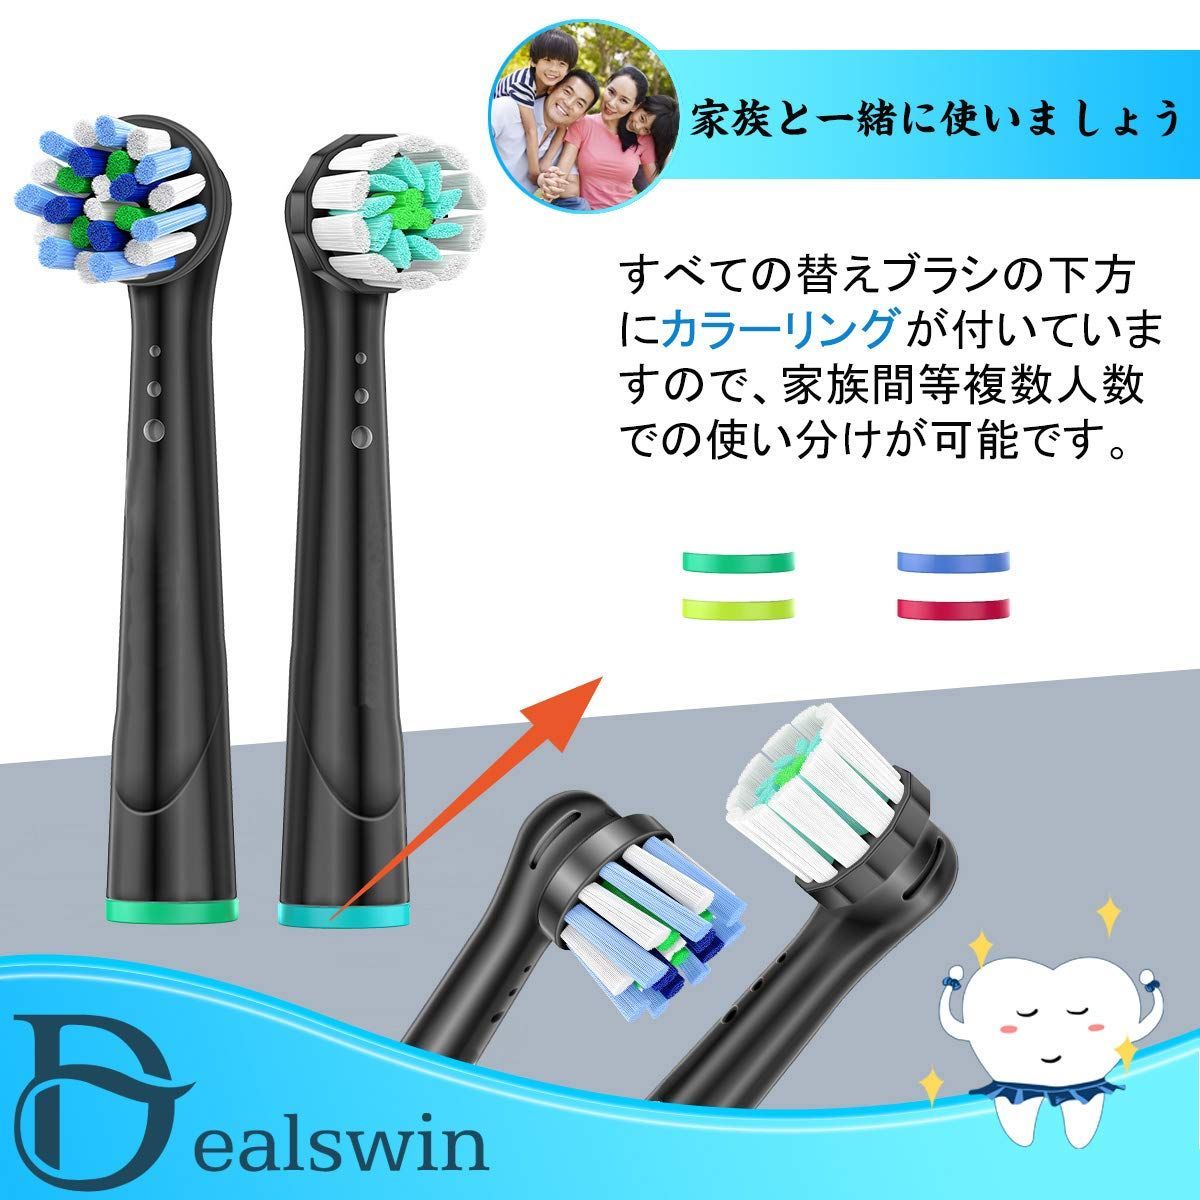 Dealswin ブラウン オーラルB 対応 電動歯ブラシ 替えブラシ 替え 歯ブラシ マルチアクションブラシ EB50 やわらか極細毛ブラシ EB60